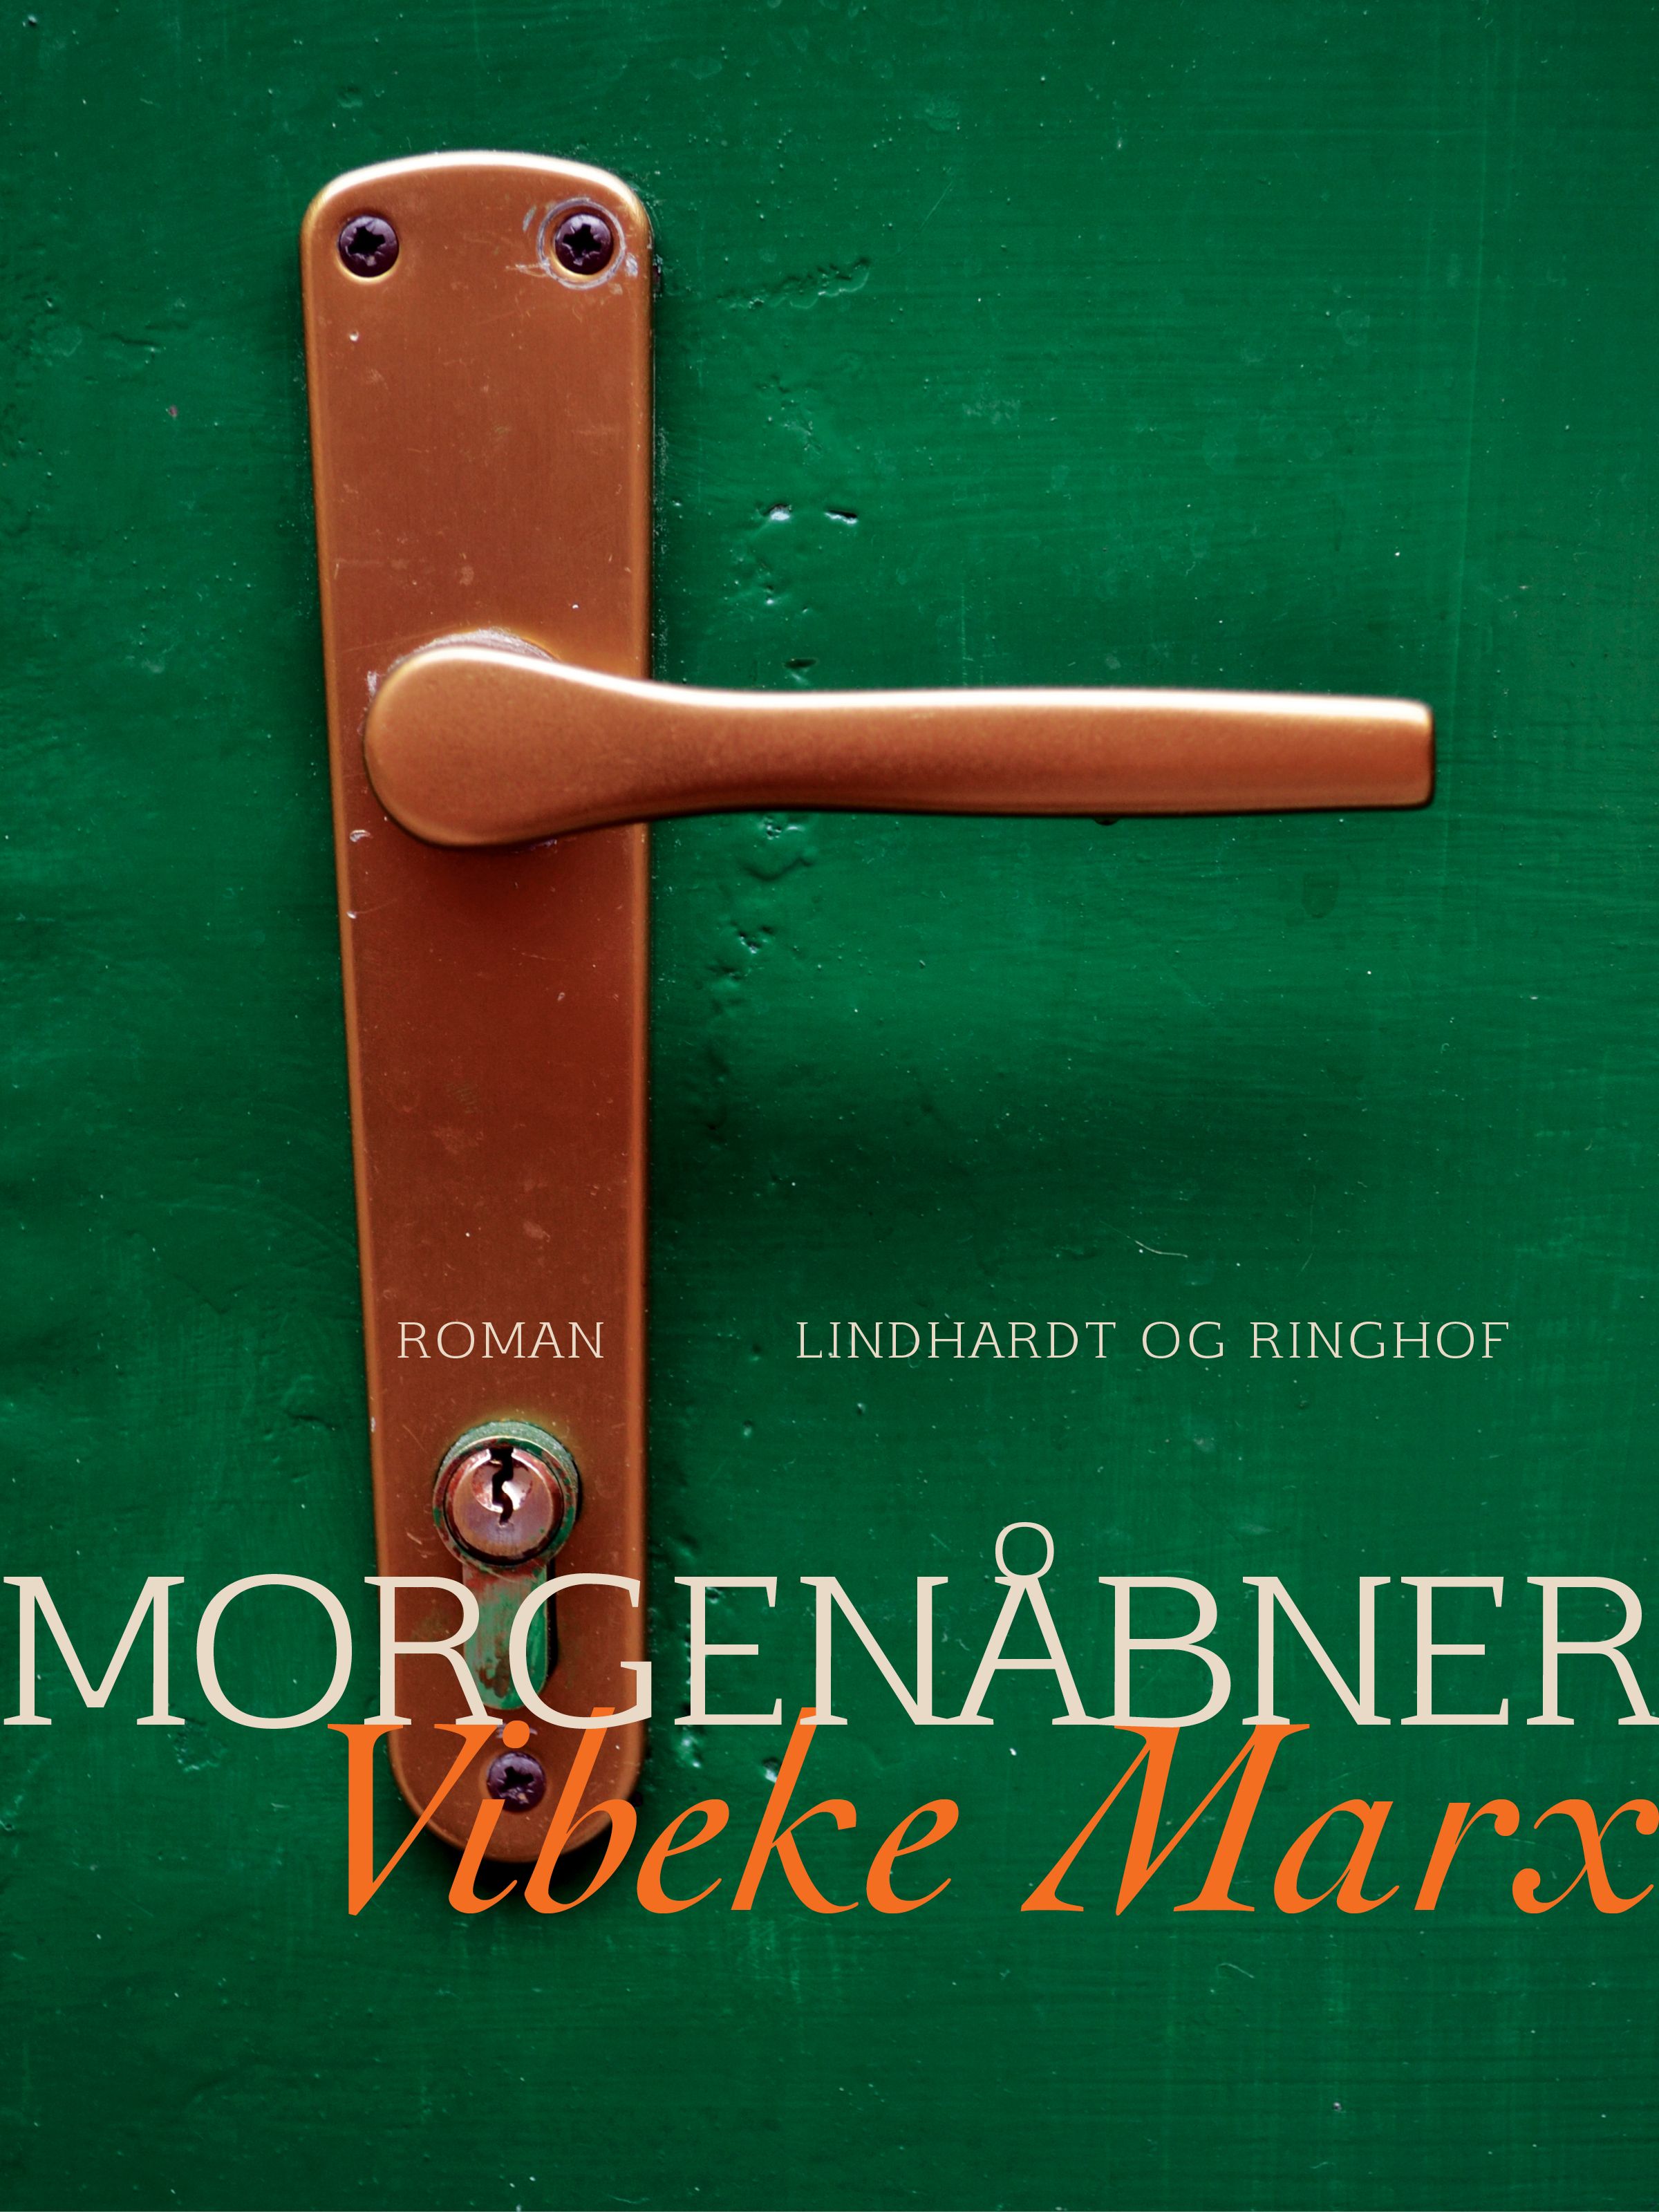 Morgenåbner, lydbog af Vibeke Marx